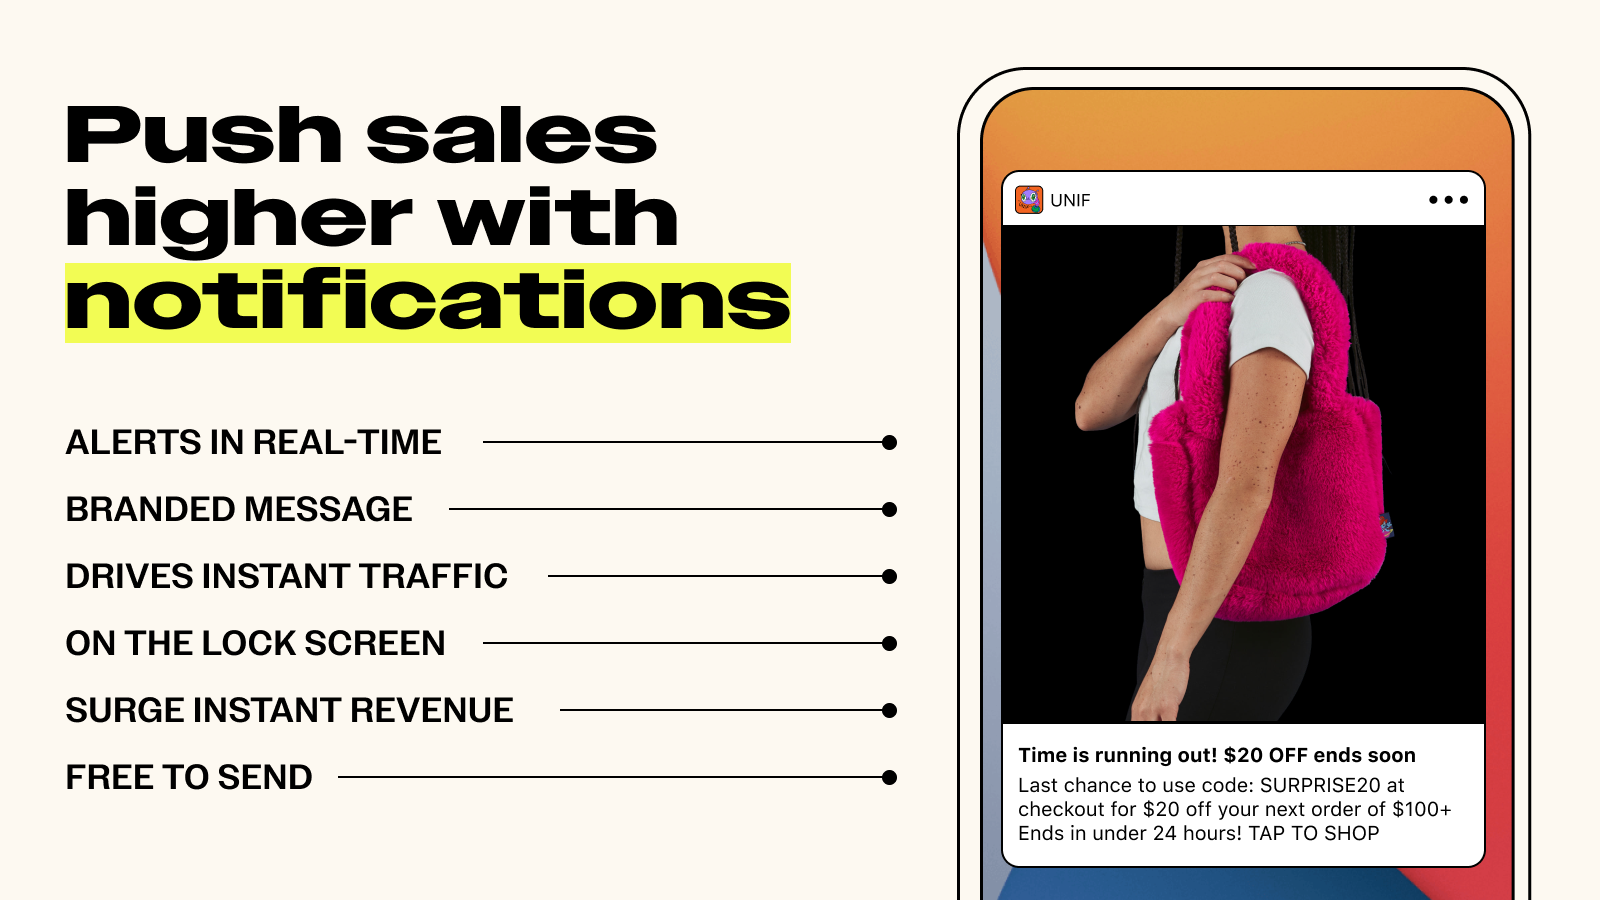 Las notificaciones push de tu aplicación móvil Shopify impulsan las ventas